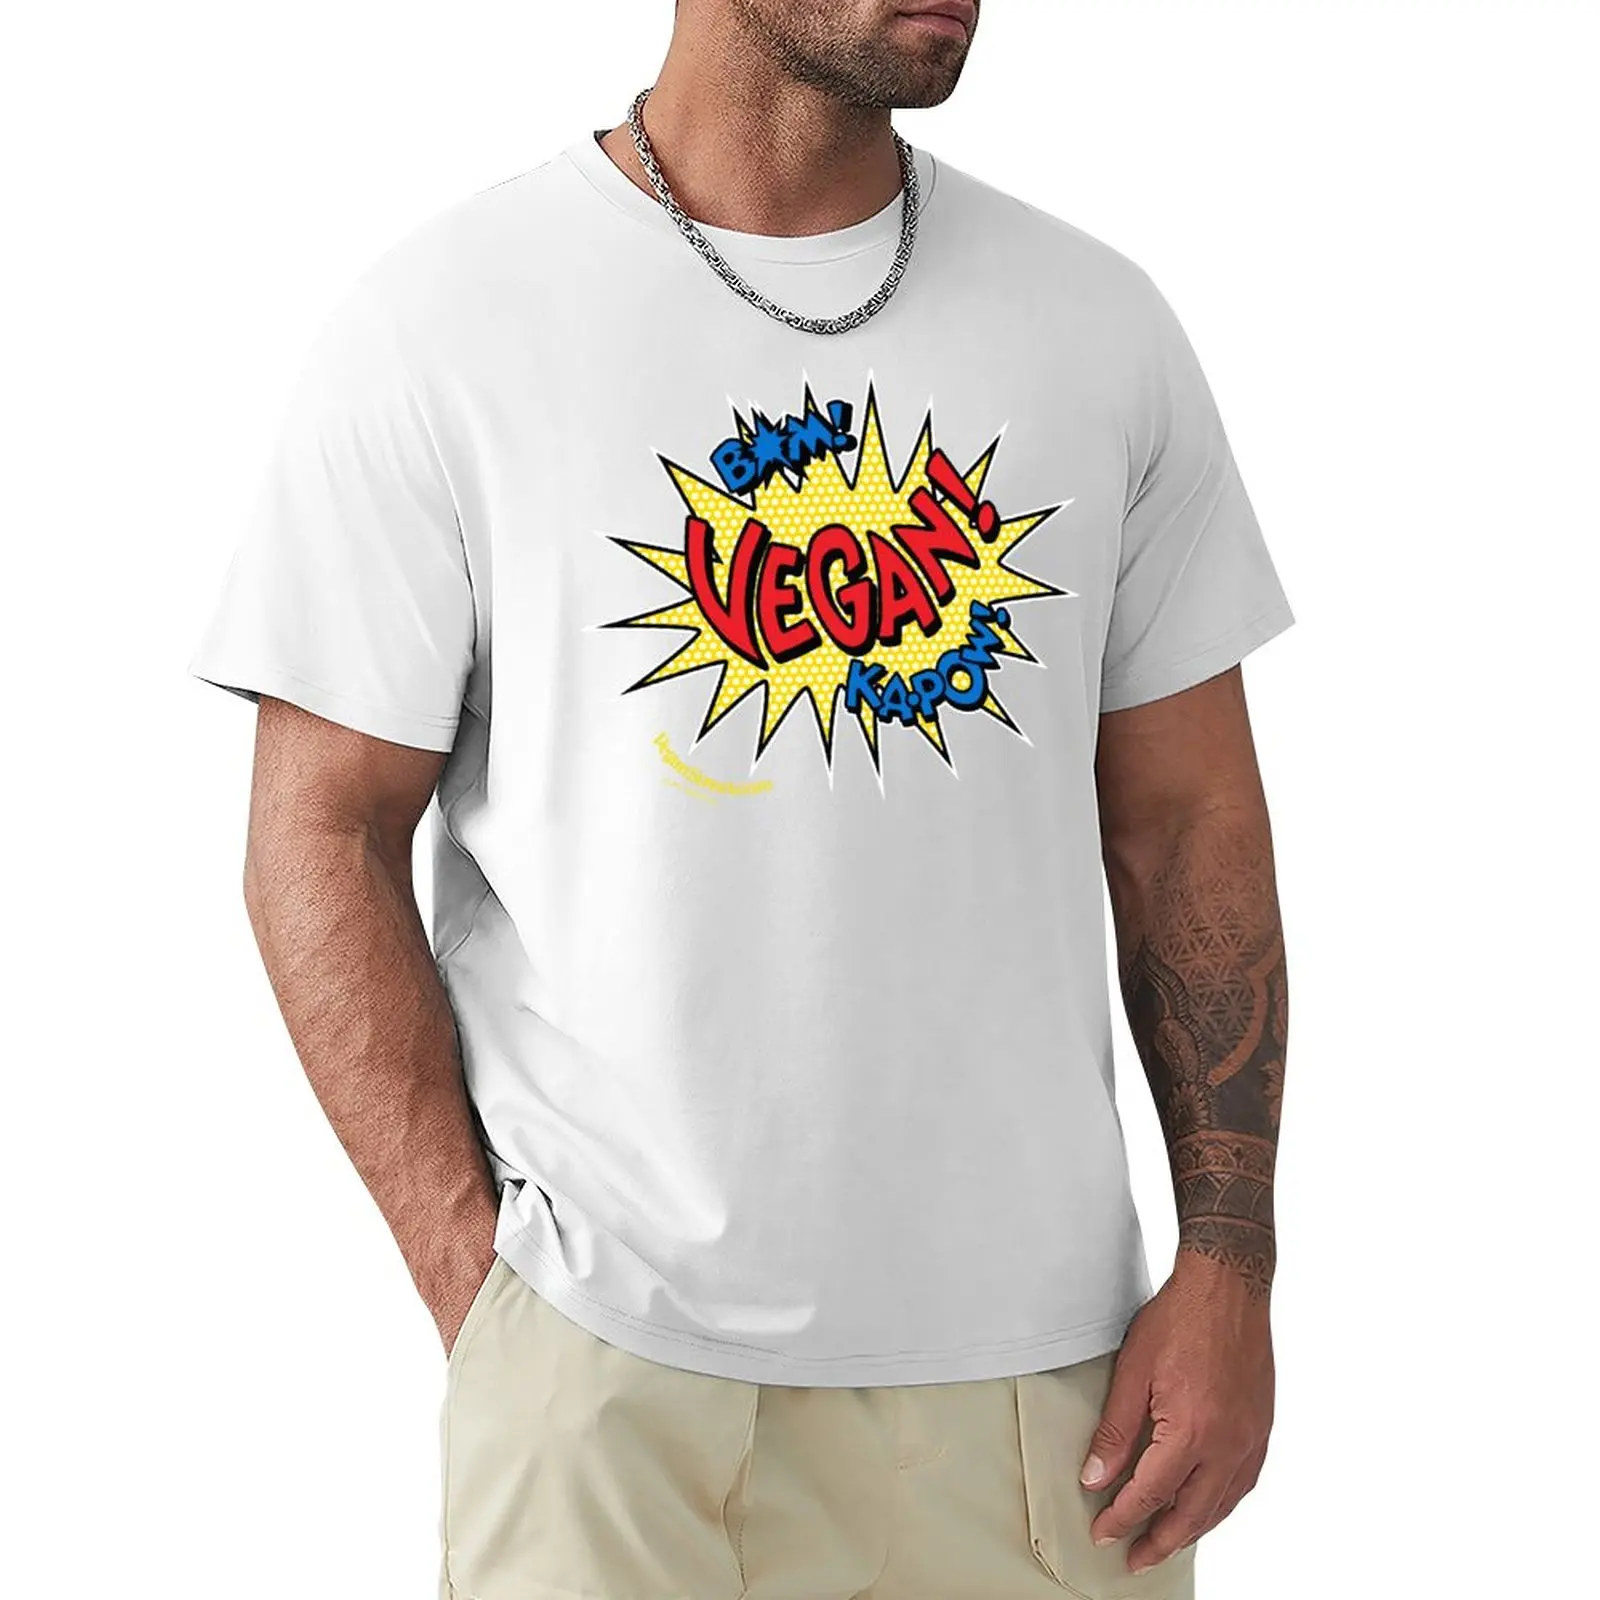 Bam! Ka-Pow! Vegan! T-Shirt kawaii clothes funnys Aesthetic clothing mens cotton t shirts